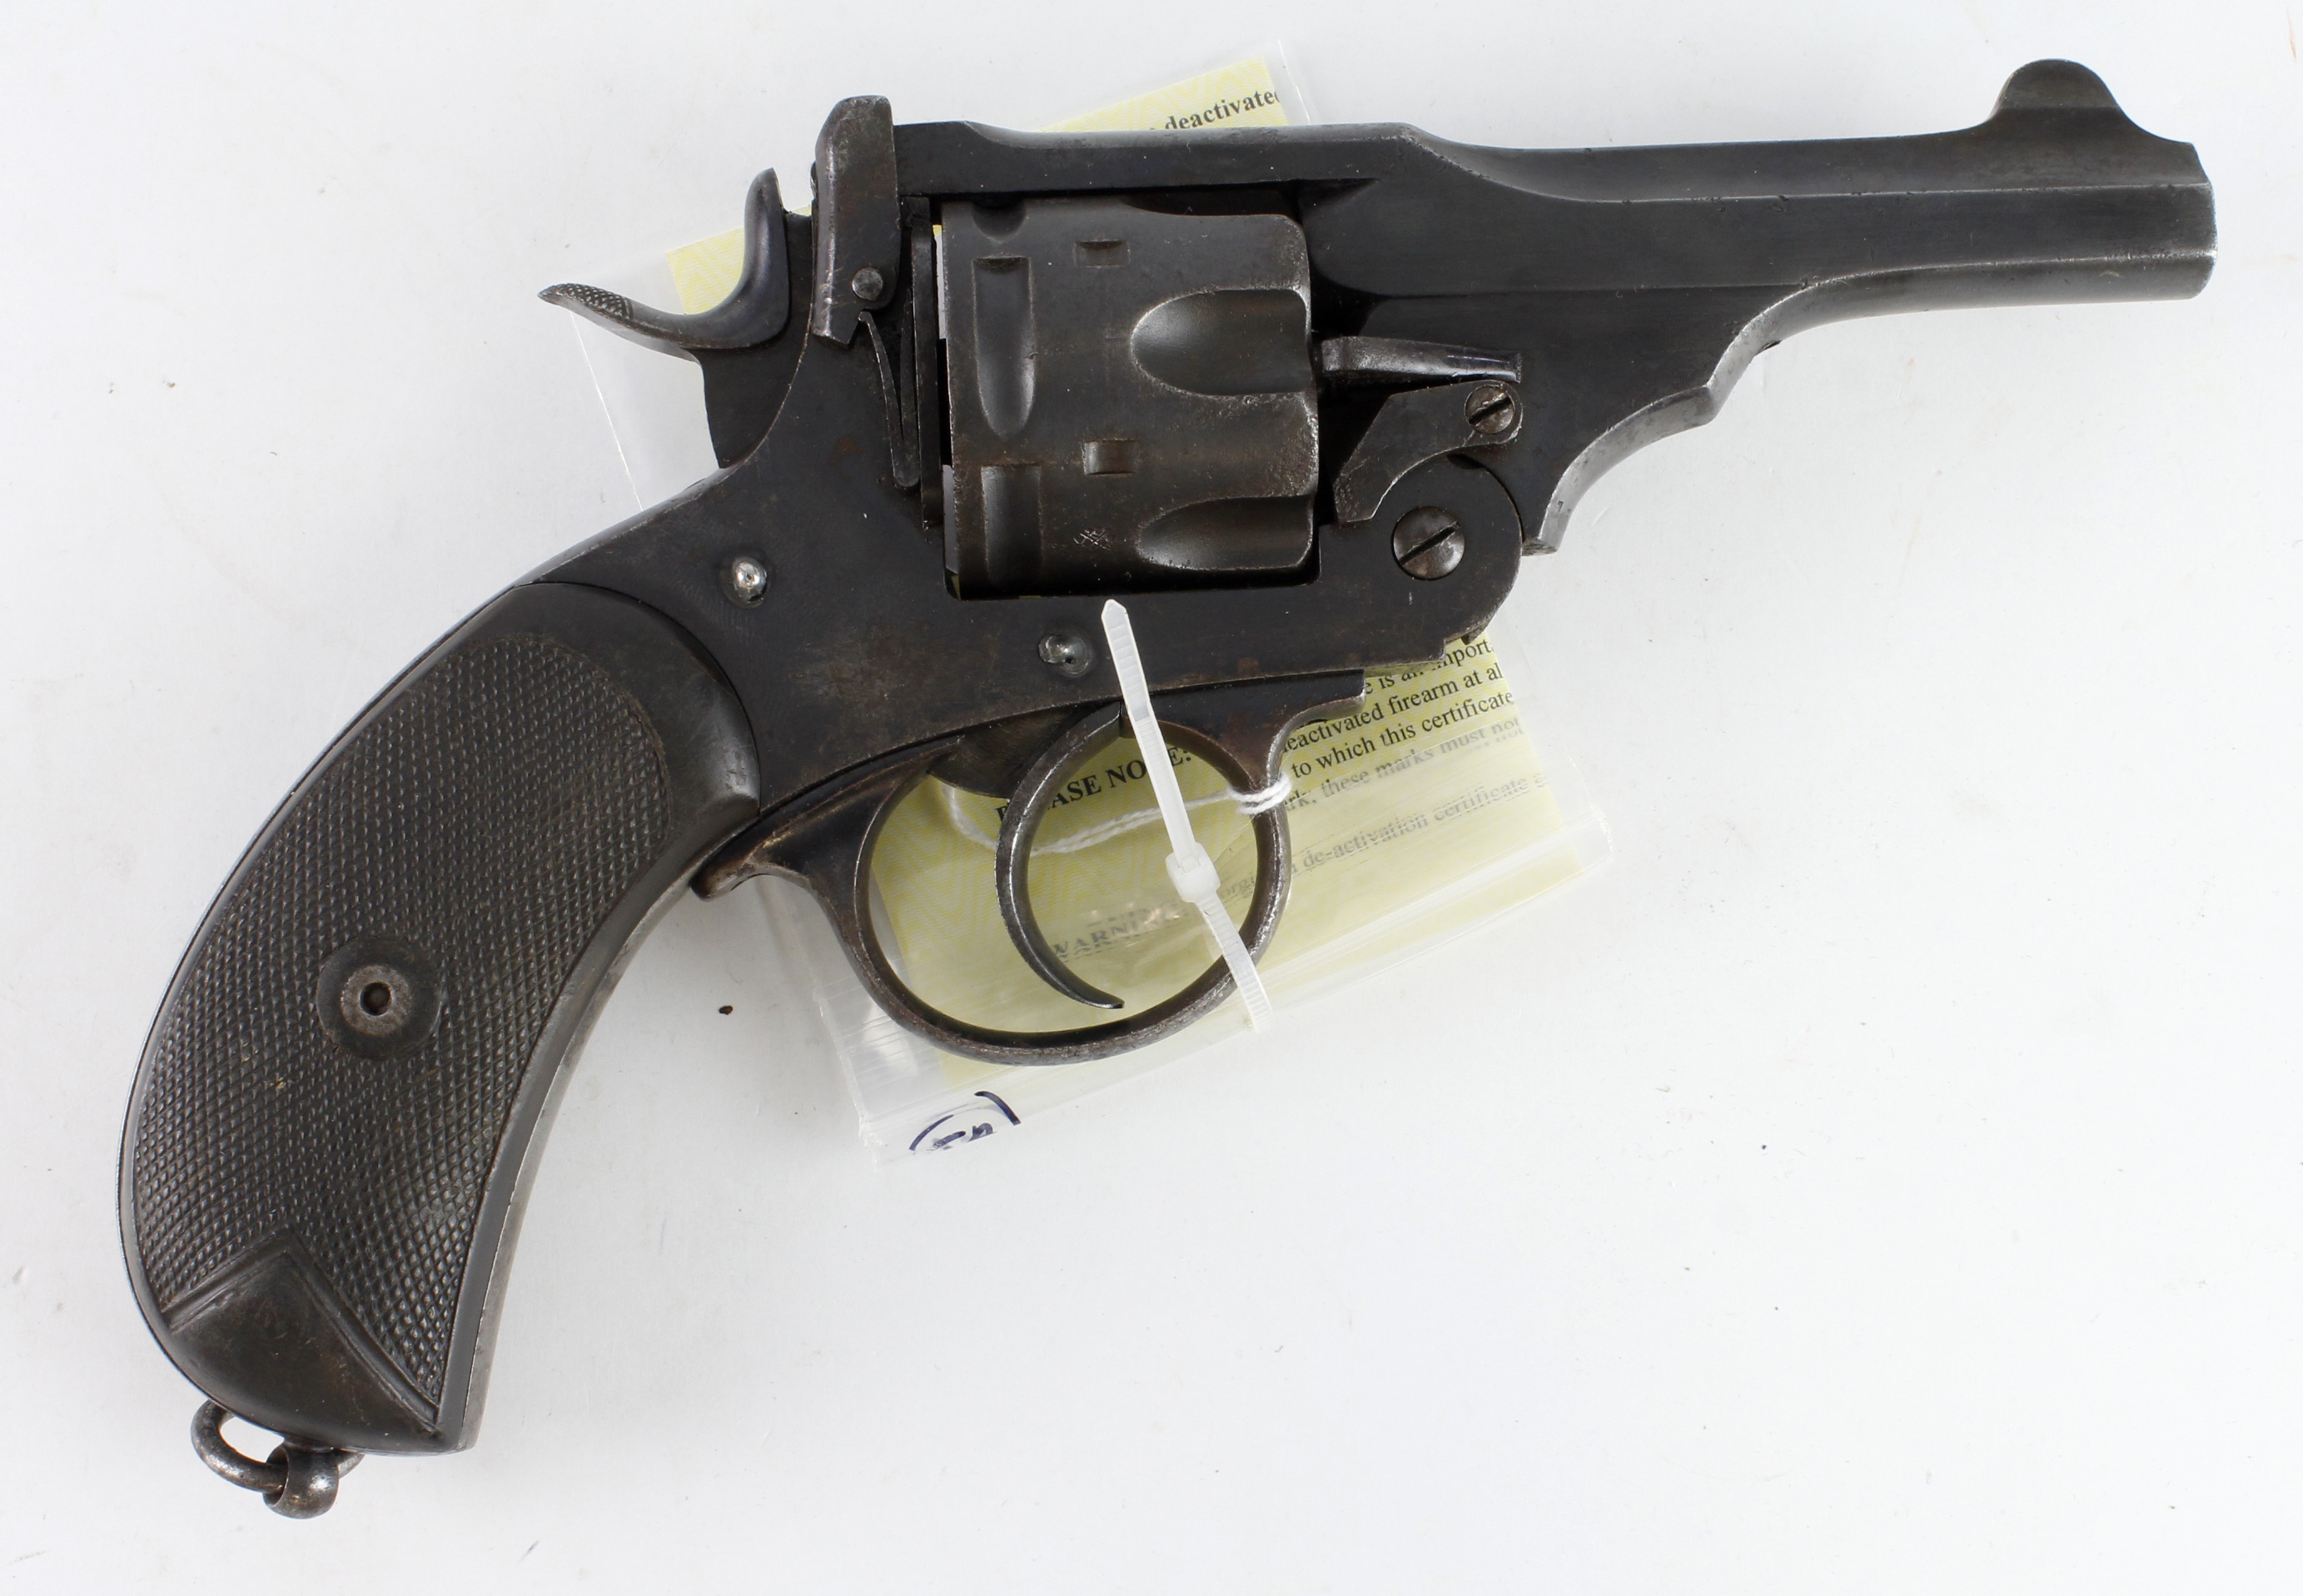 Scarce Webley MkV Service Revolver, frame marked "Webley Patents 1914", frame and barrel assembly